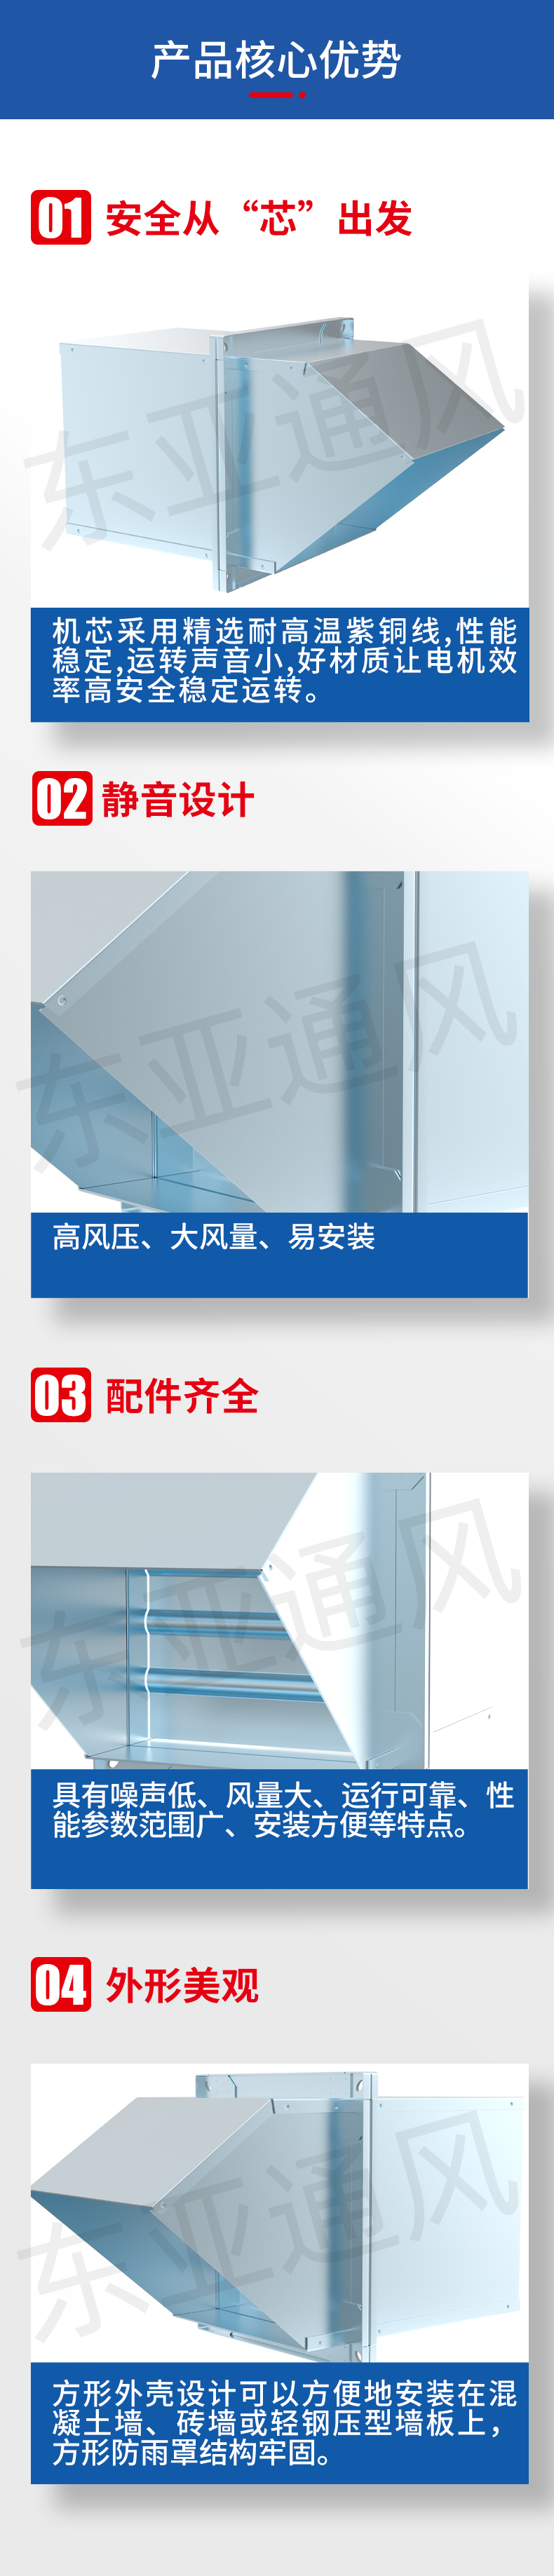 详情页-DWEX(WEX)tb天博官网(中国)有限公司边墙式通、排风机_02.jpg